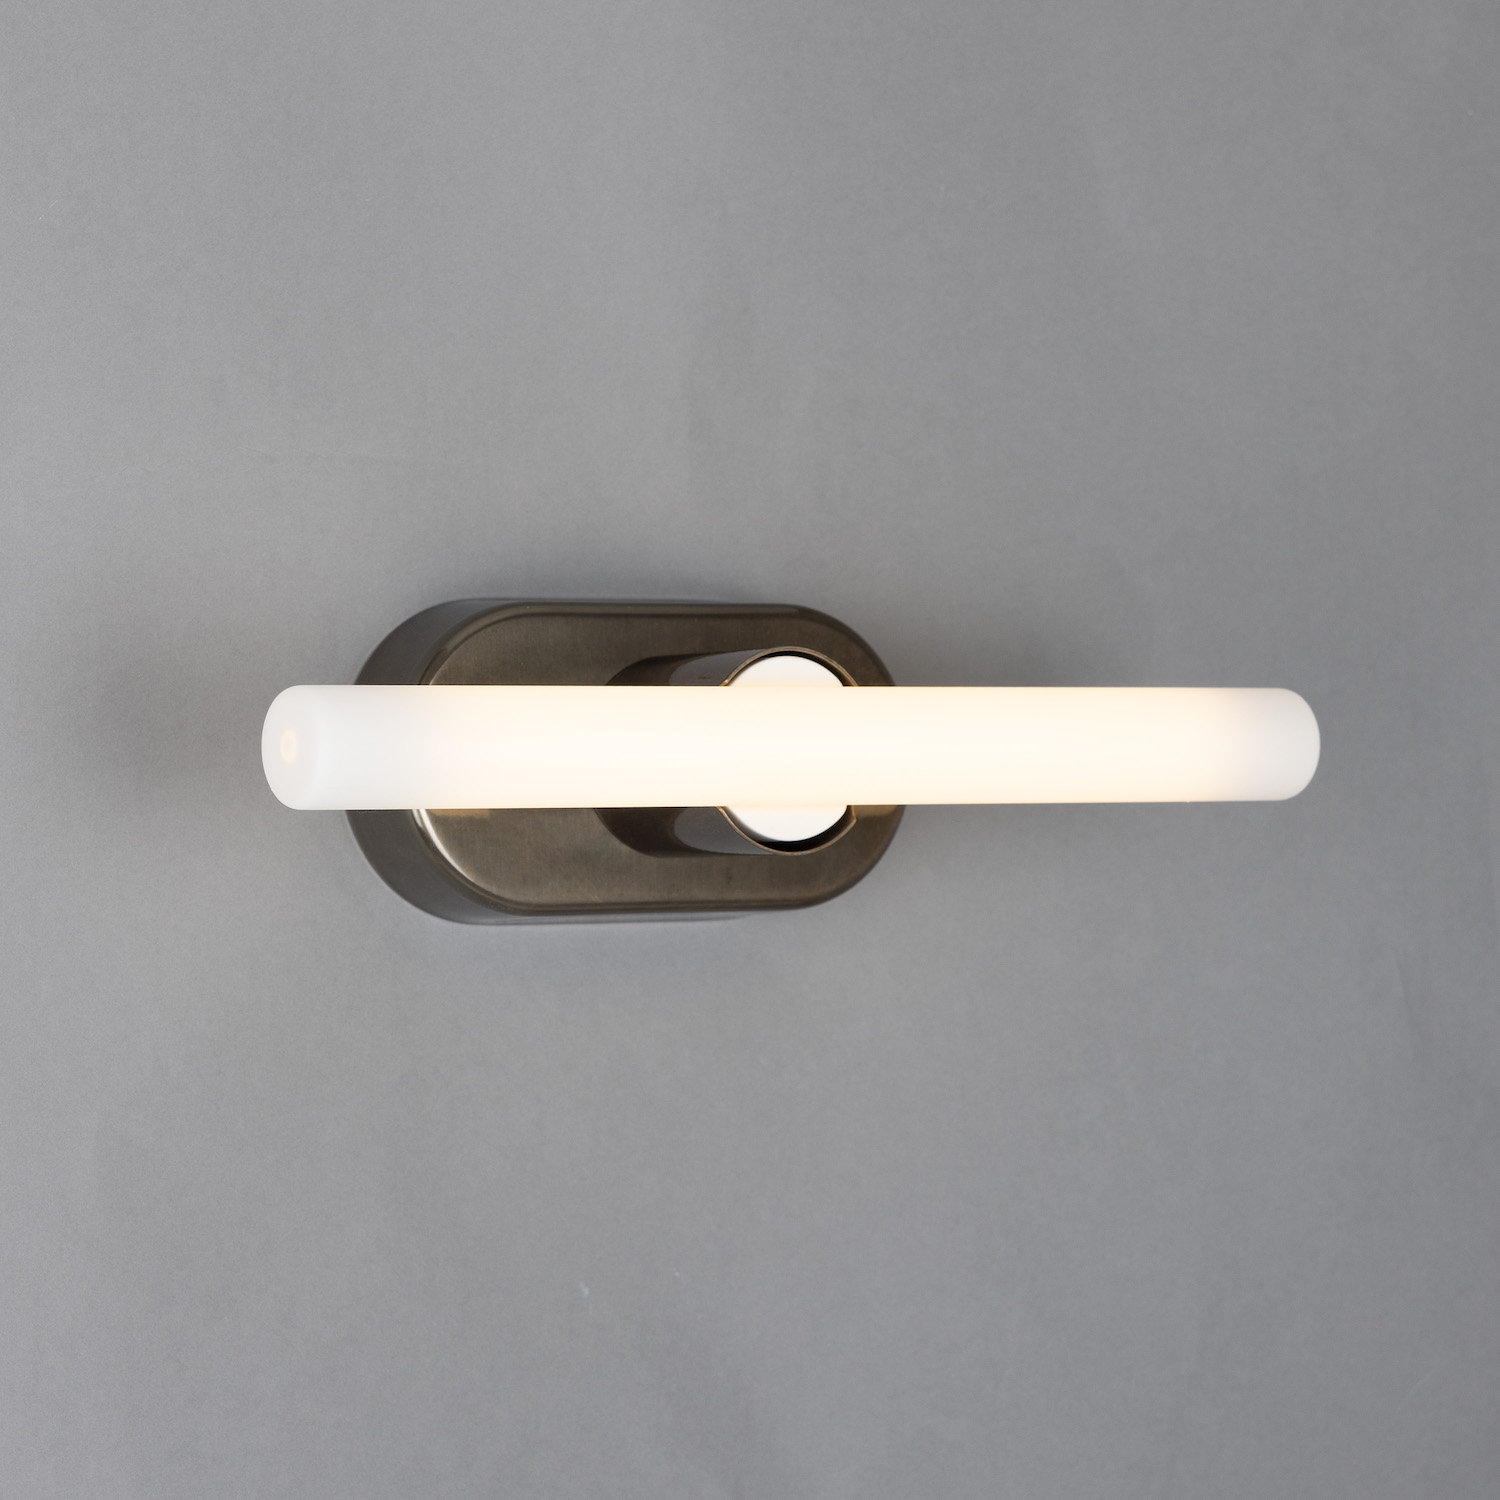 Minimalistische Wand- oder Spiegelleuchte aus Messing: Messing alt-silbern patiniert, Modell 1